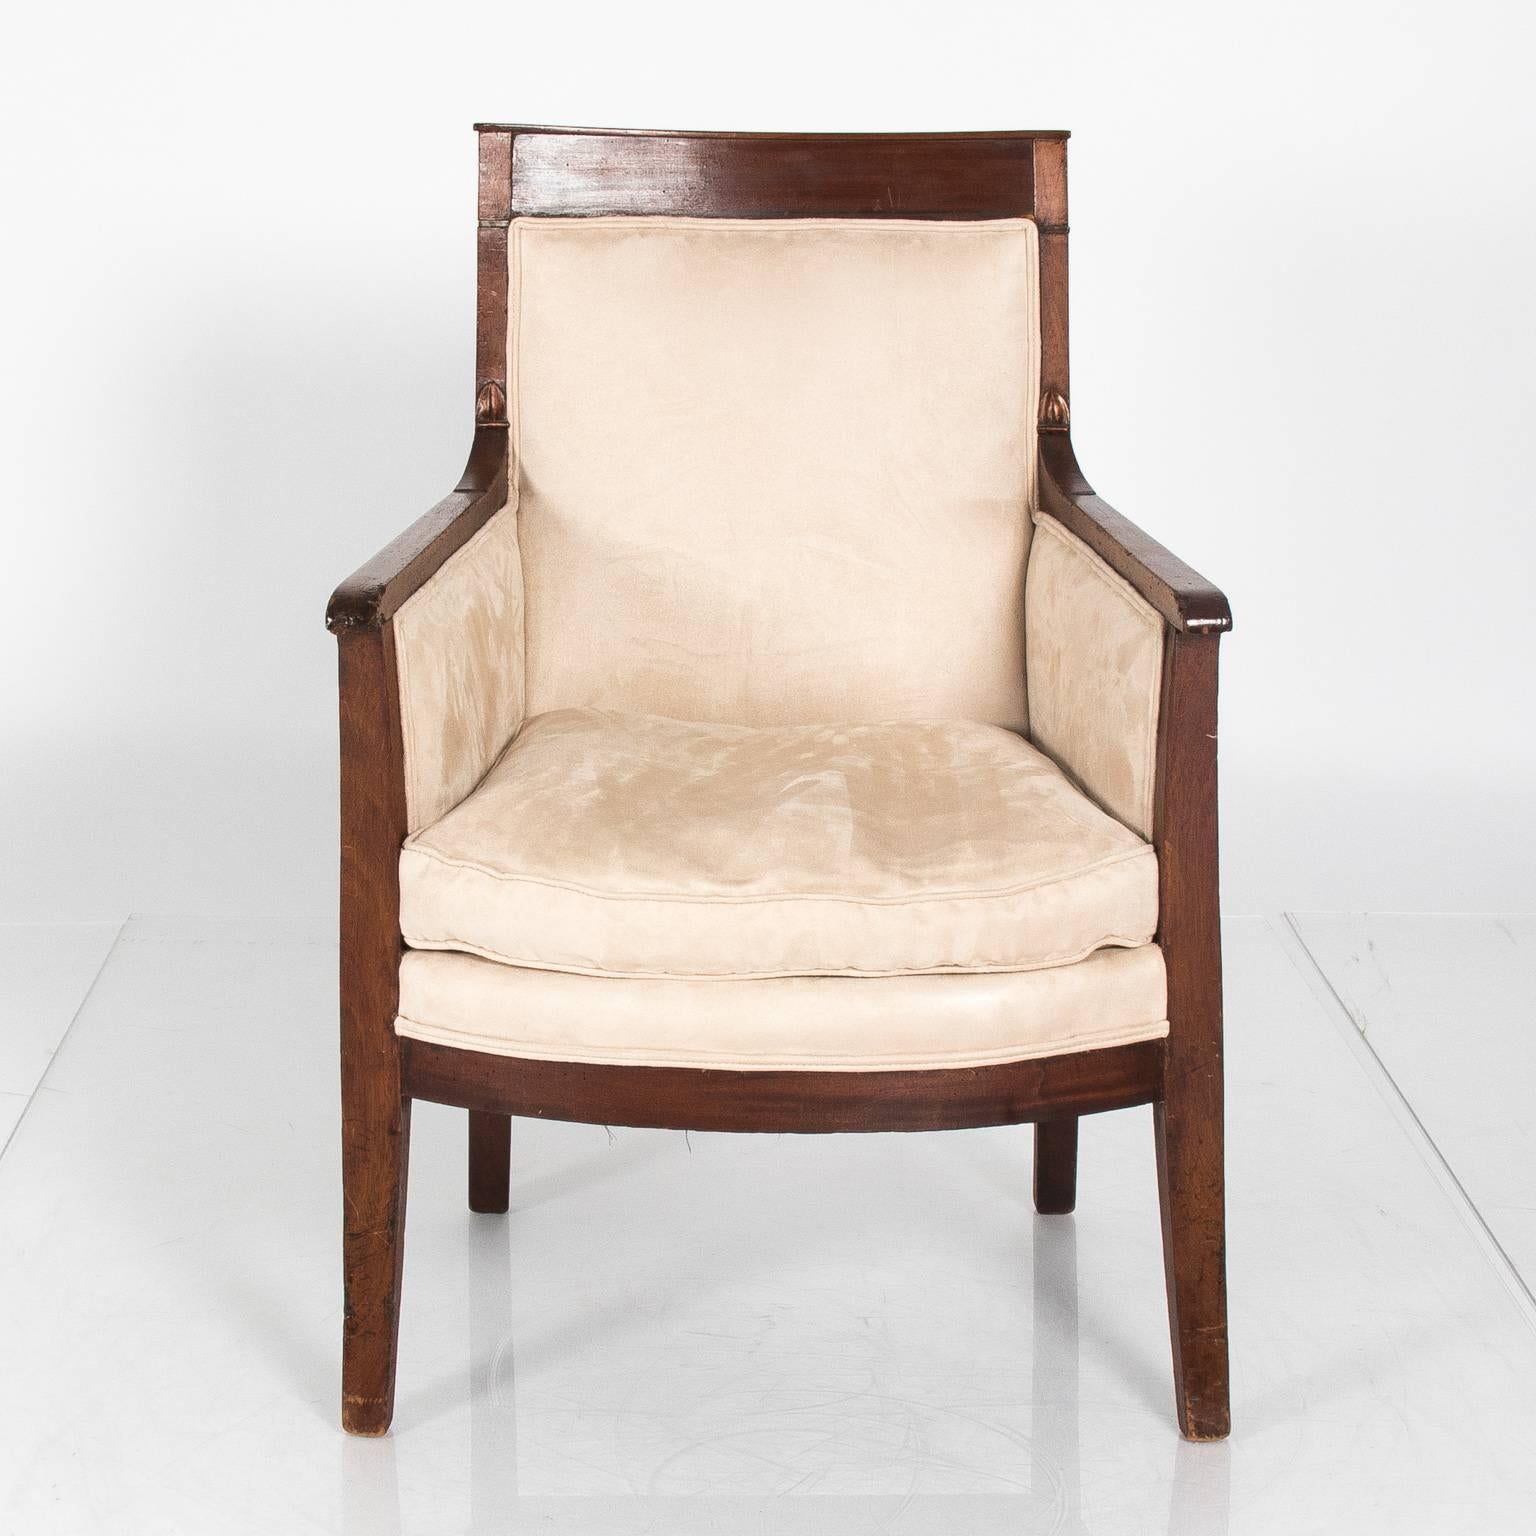 Mahogany bergere chair, circa 1830.
 